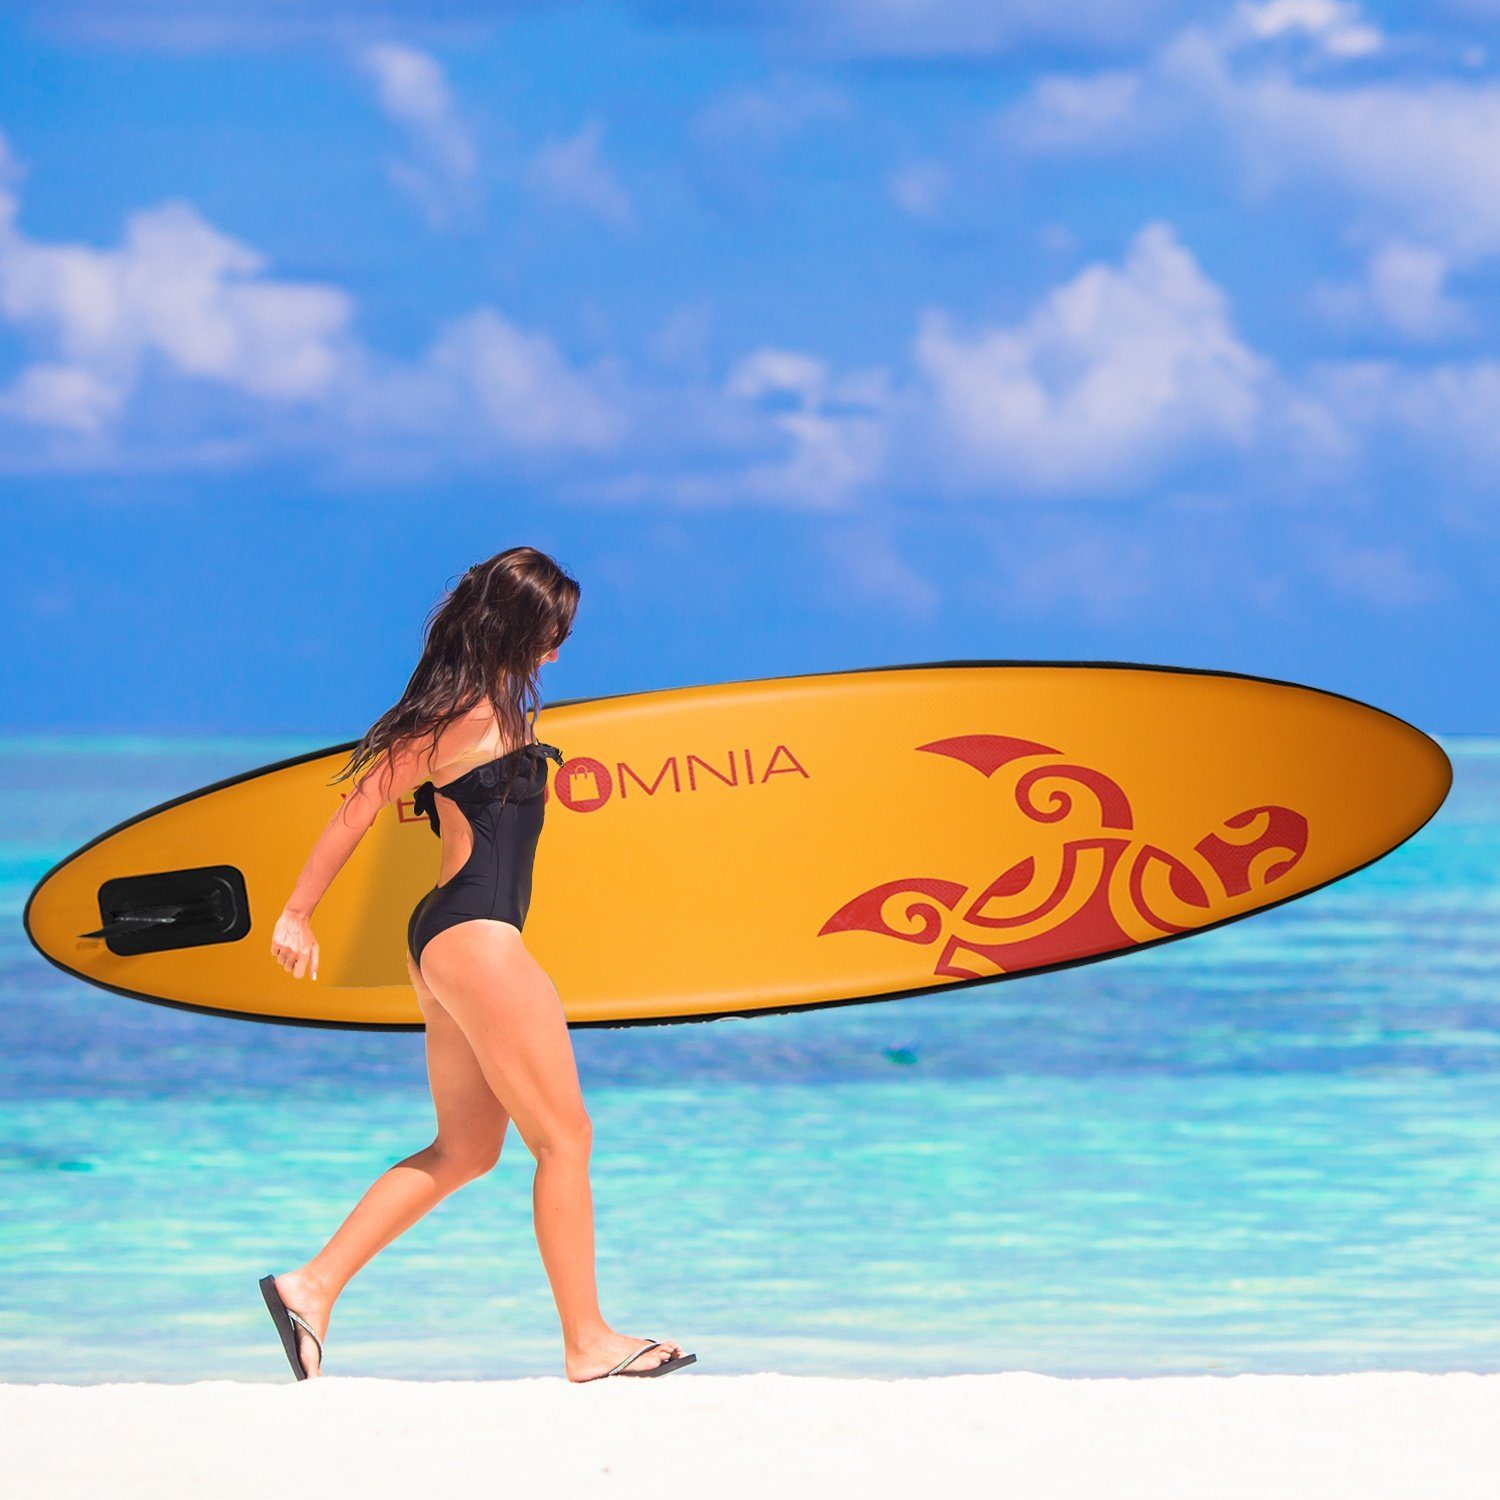 VENDOMNIA Inflatable SUP-Board Set - 5: PVC max 4 Up Surfboard) 7 Paddle 130 aufblasbar, Zubehör, Größen Stand Board, Tragetasche, 3 Modell board, 366cm Paddelboard, dick, 320cm cm Schichten, 380cm, Weiß-Türkis Farben, kg, Pumpe, (15 Paddling 305cm